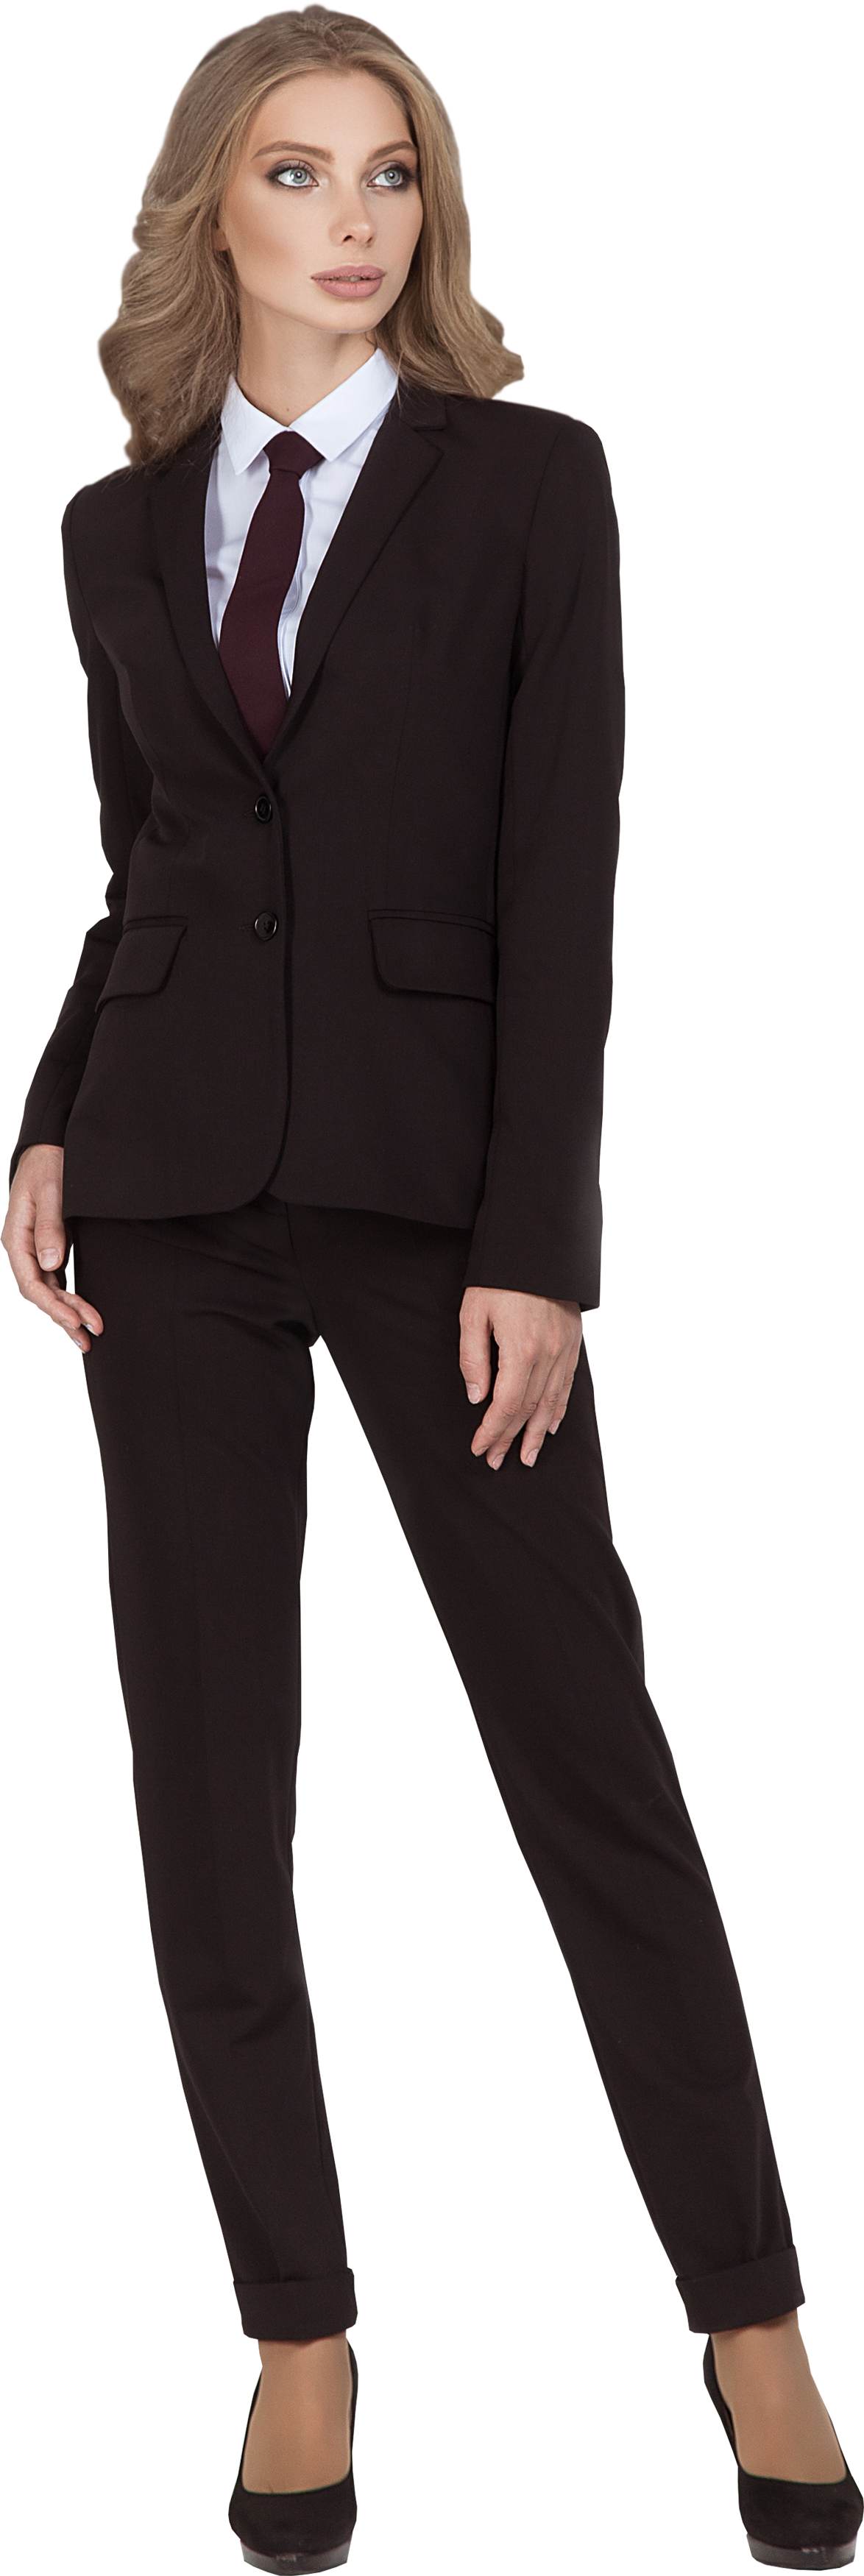  Комплект для администратора DALLAS - жакет / брюки, женский.